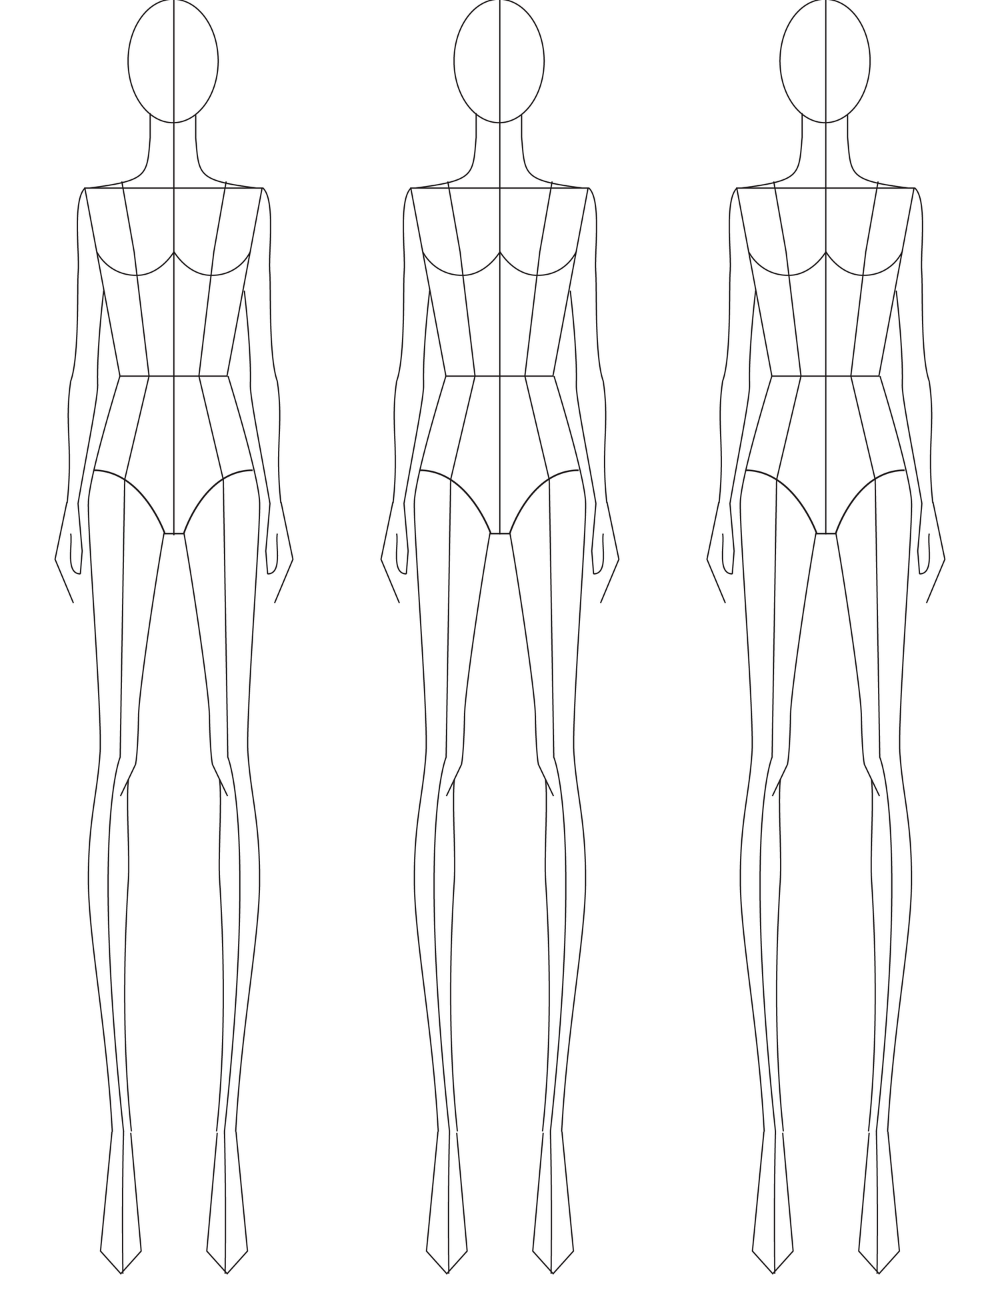 Тип рисования человека. Фигура для моделирования одежды. Эскиз фигуры для моделирования одежды. Модель для рисования одежды. Фигура для эскизов одежды.